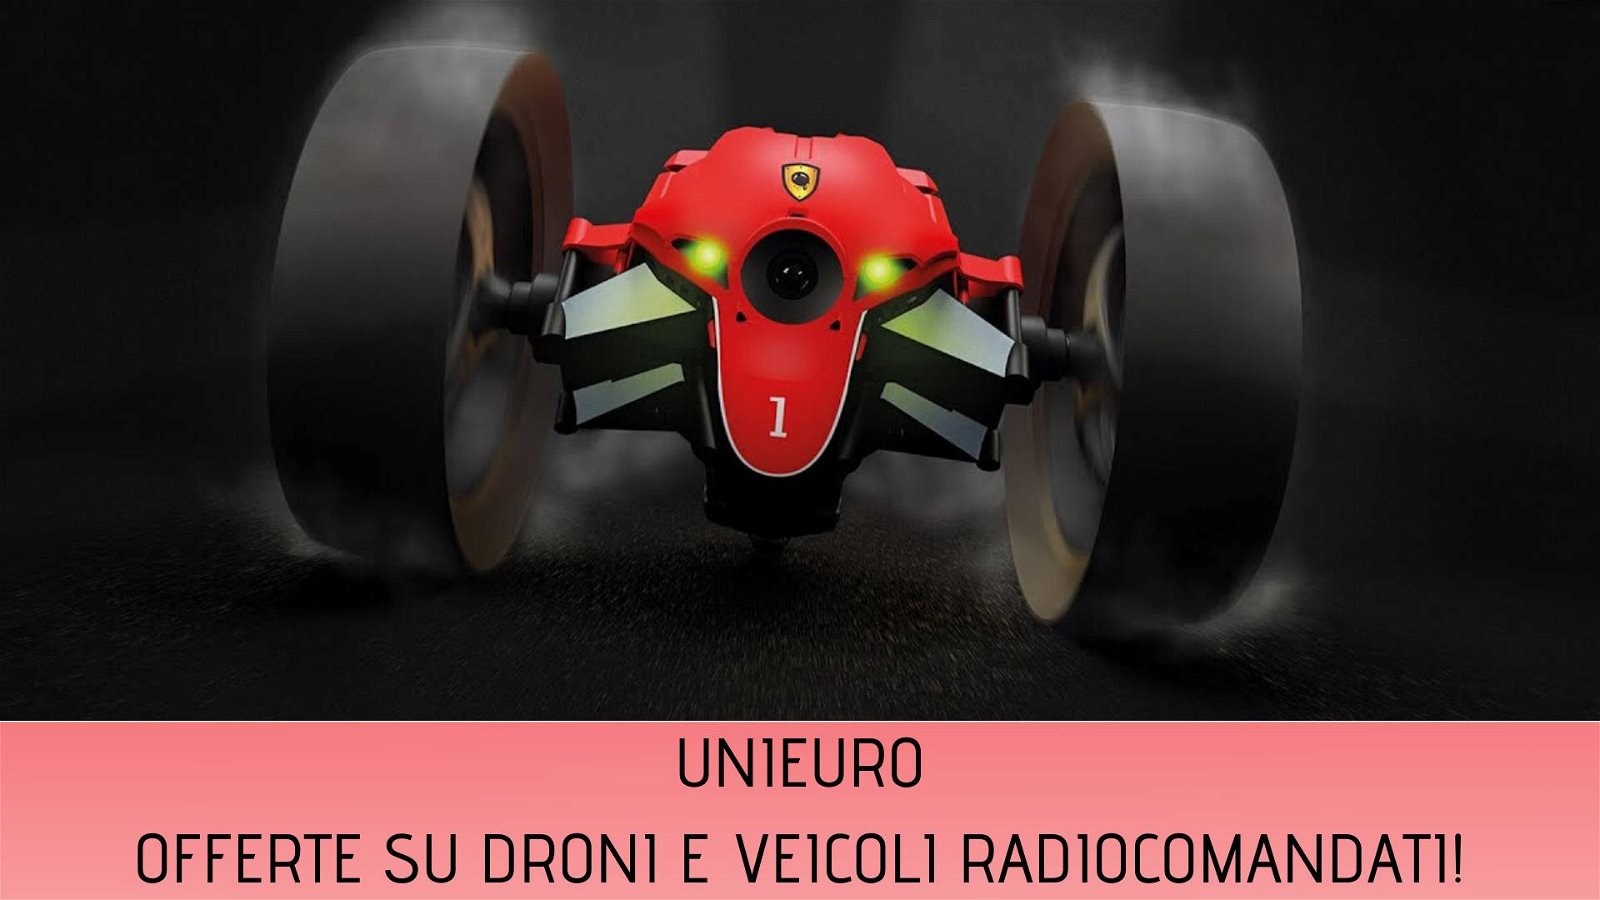 Immagine di Super offerte Unieuro: fino al 60% di sconto su droni e veicoli radiocomandati!